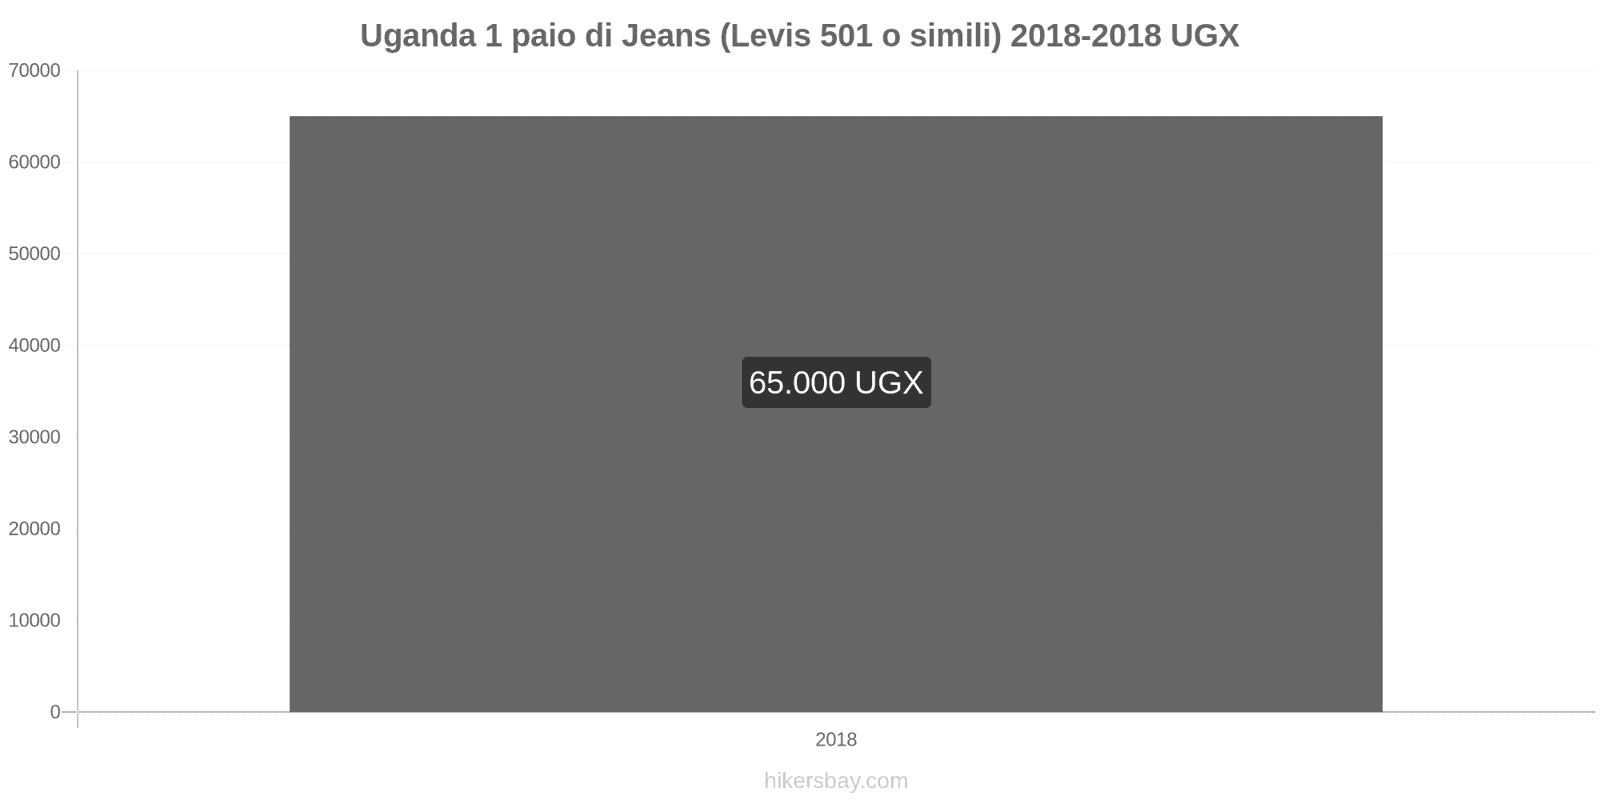 Uganda cambi di prezzo 1 paio di jeans (Levis 501 o simili) hikersbay.com